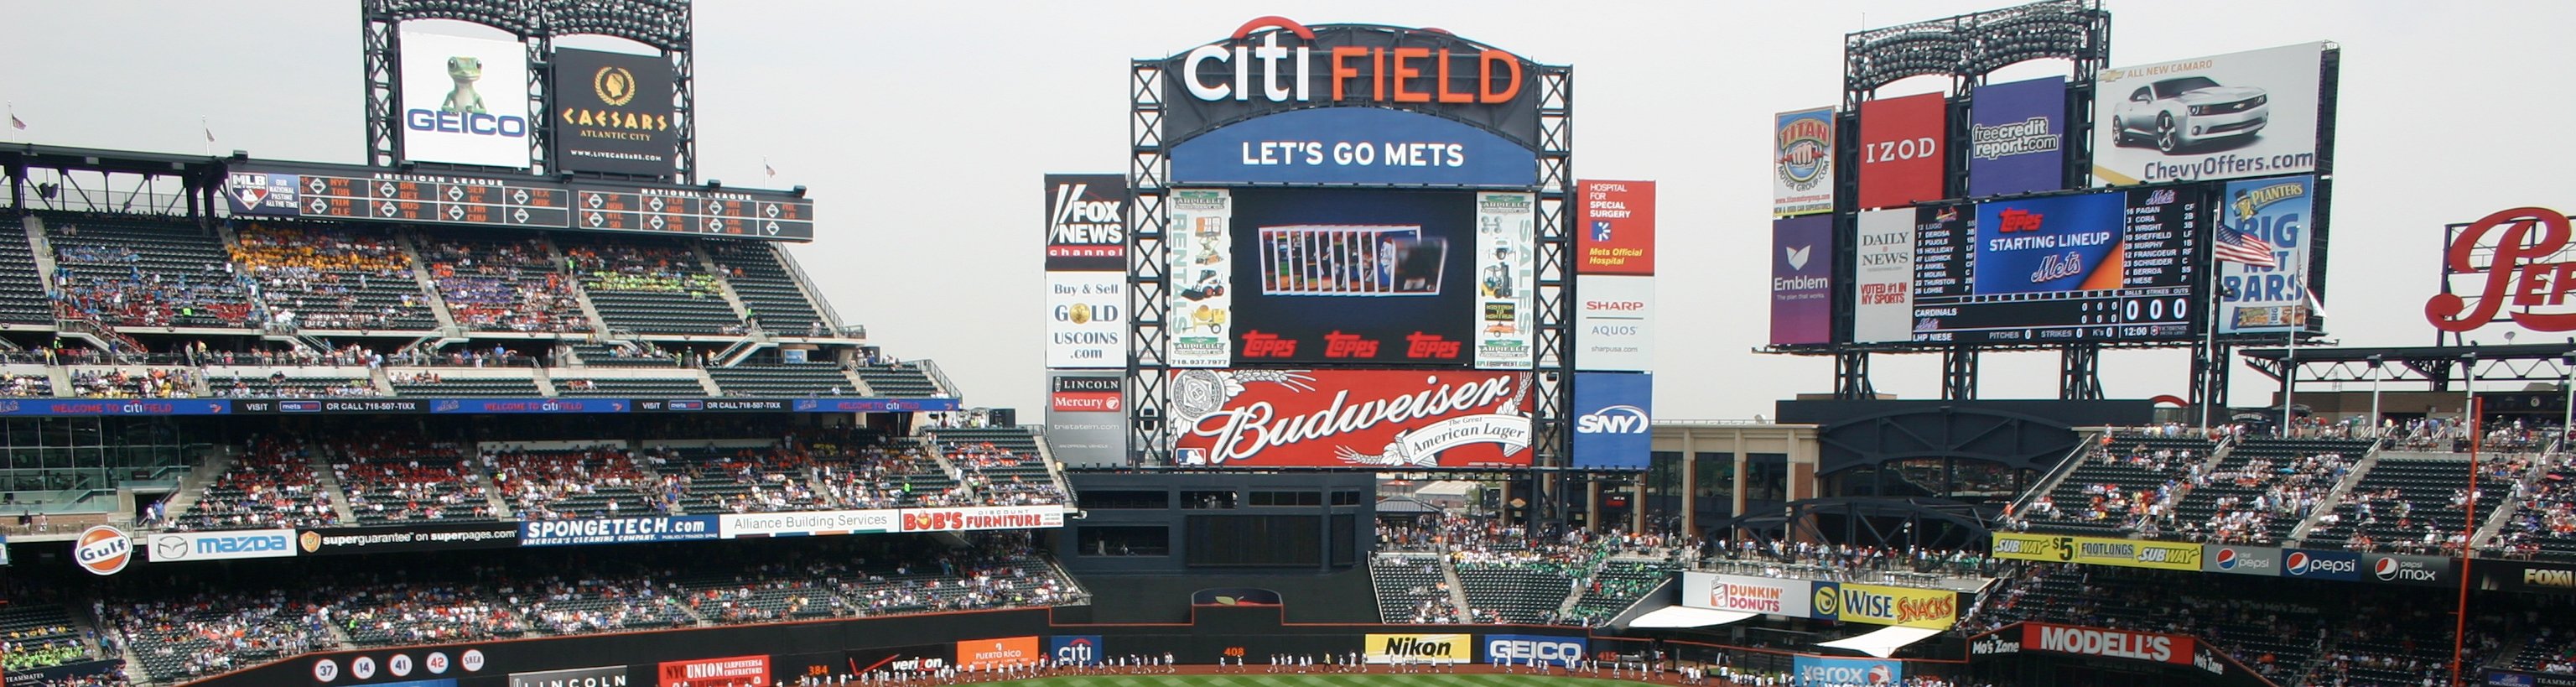 Citi_Field_Scoreboard.jpg